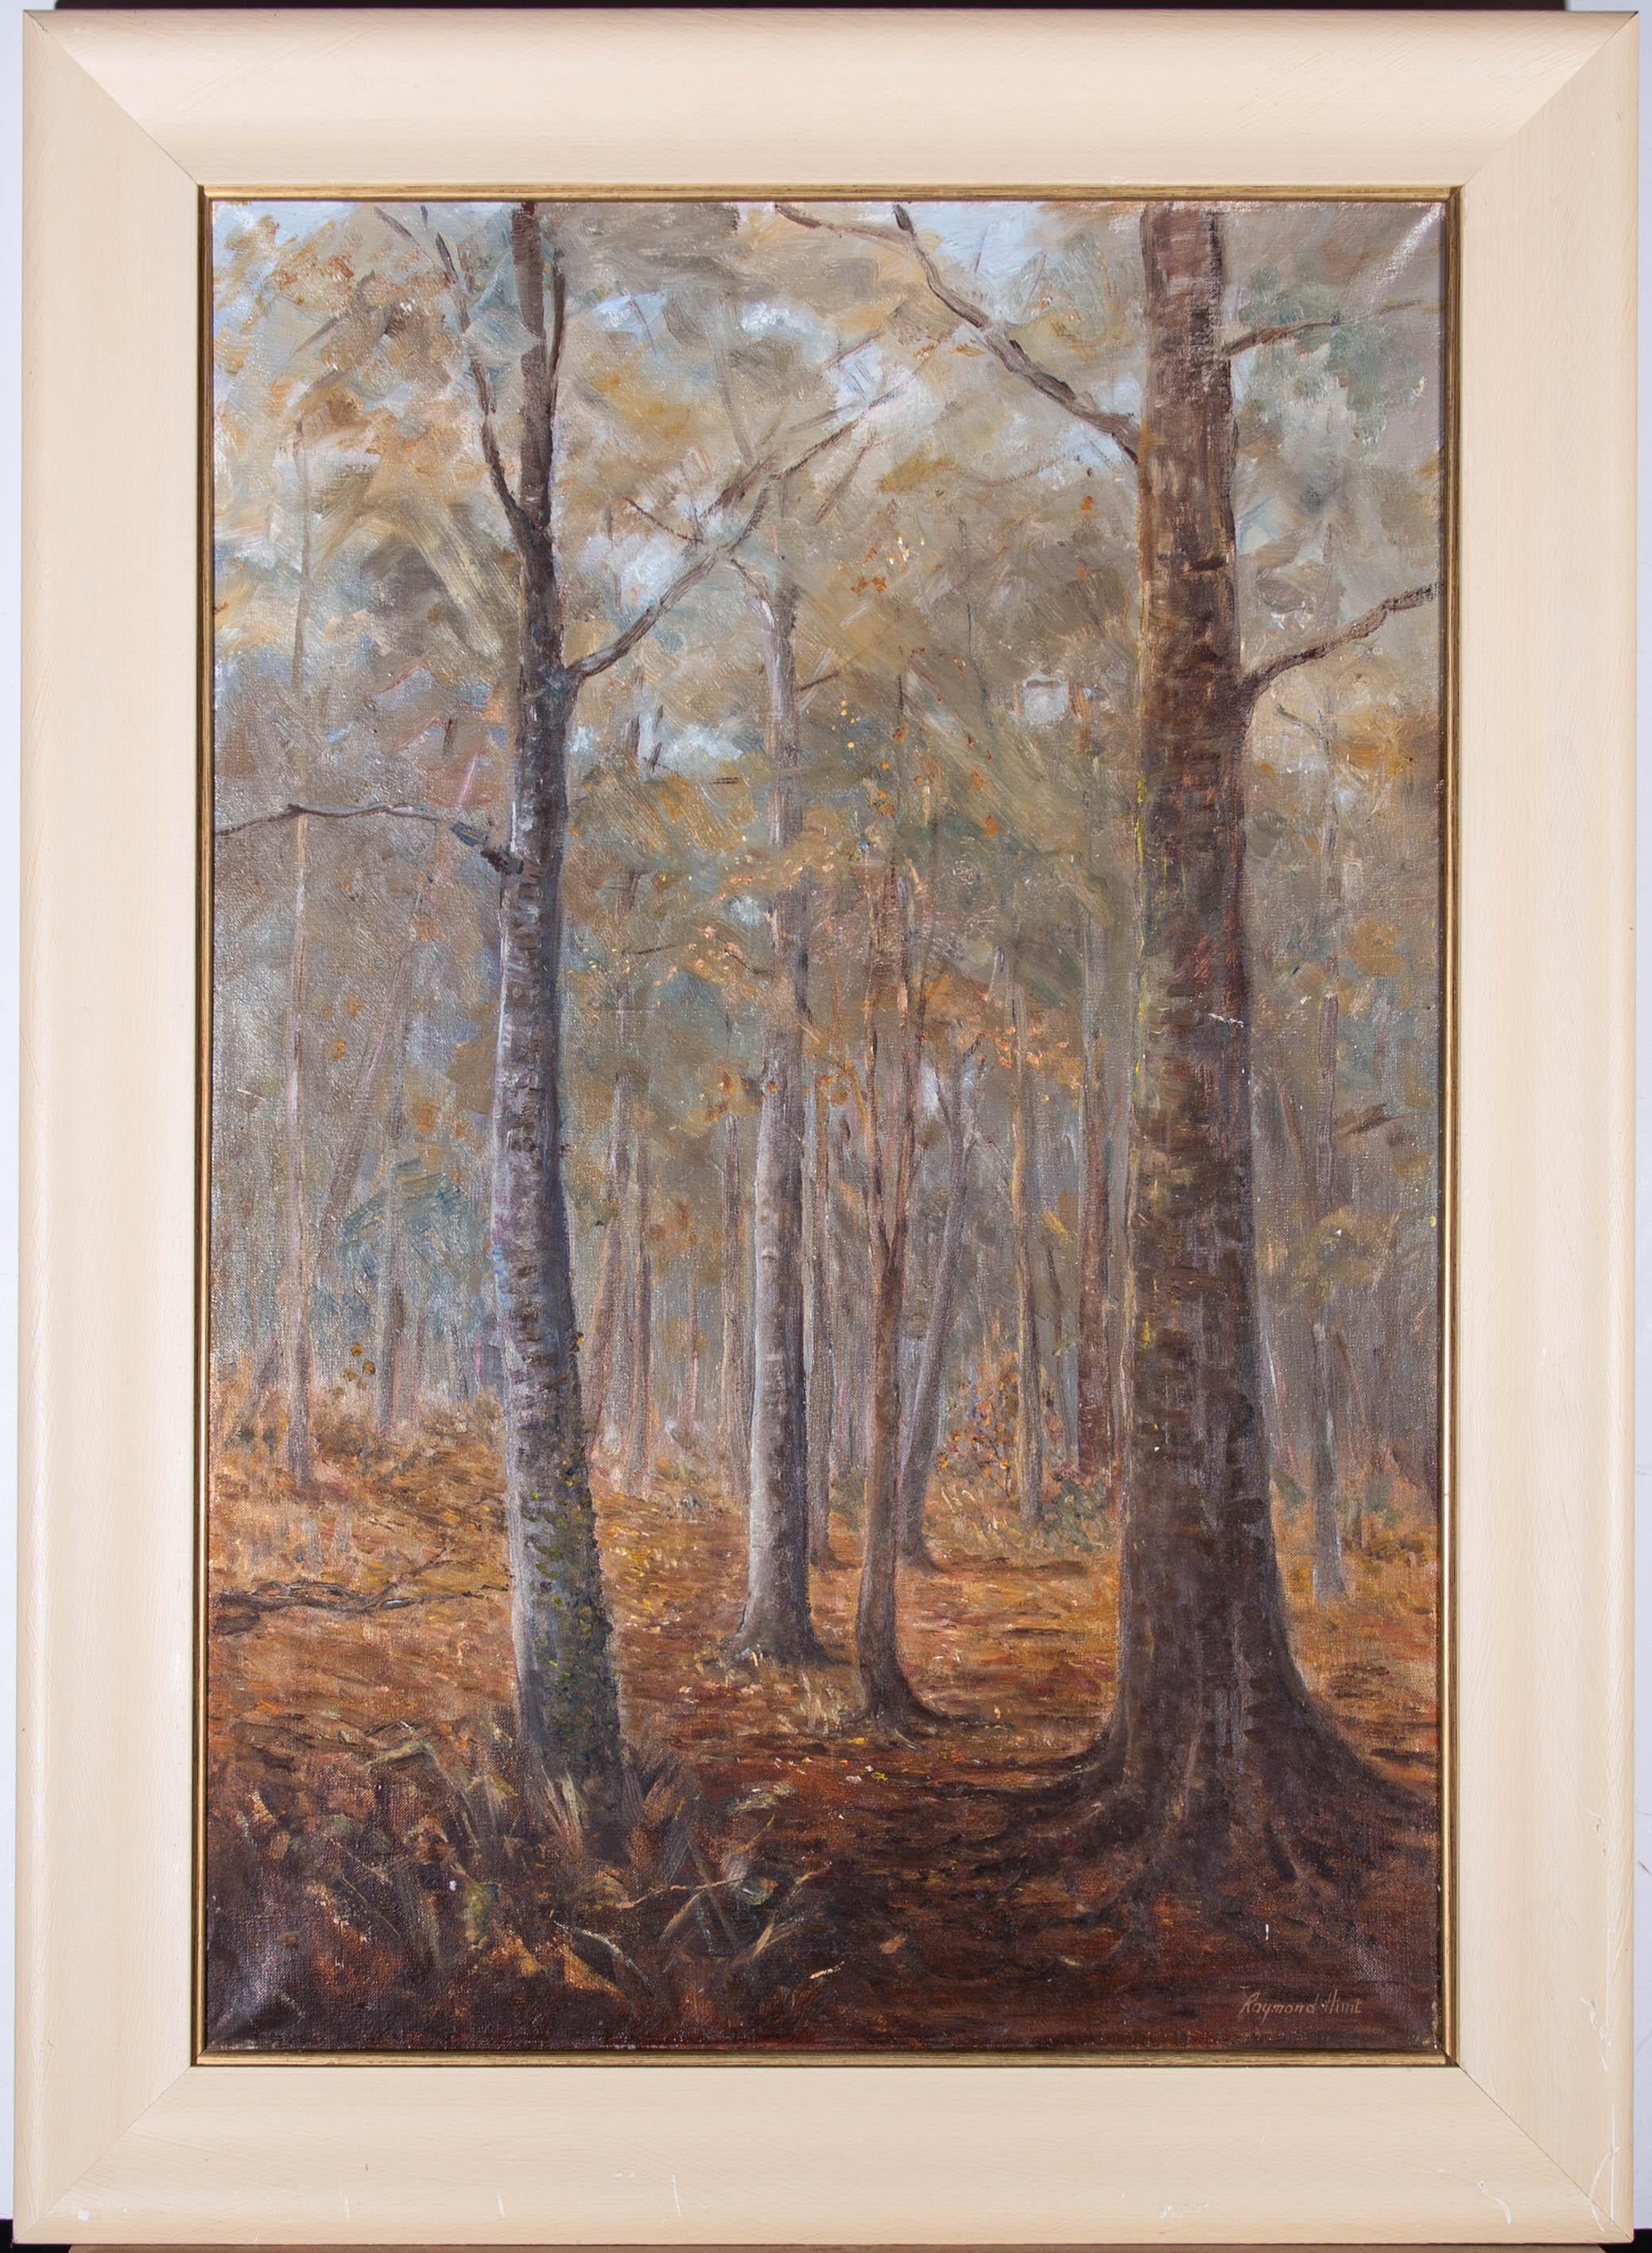 Une scène boisée atmosphérique montrant les oranges et les bruns du sol de la forêt en automne. L'artiste a signé en bas à droite et le tableau est présenté dans un cadre contemporain simple avec une fine fenêtre intérieure dorée. Sur toile.
